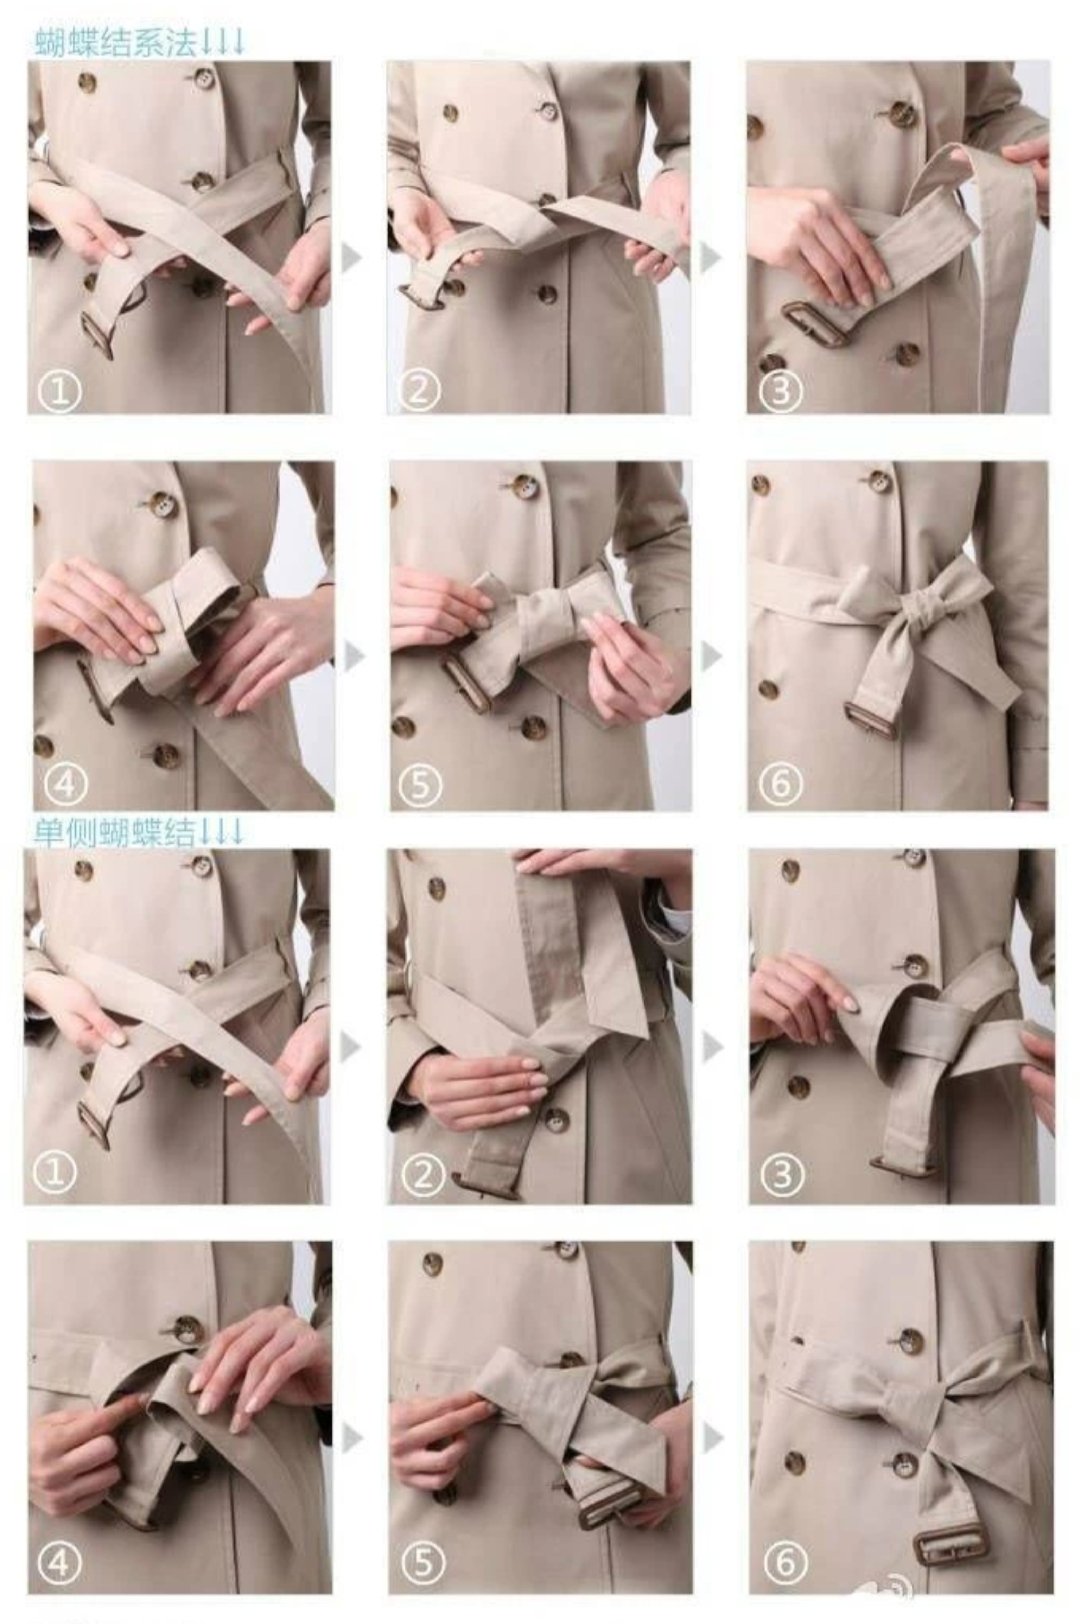 大衣腰带十字结系法图片